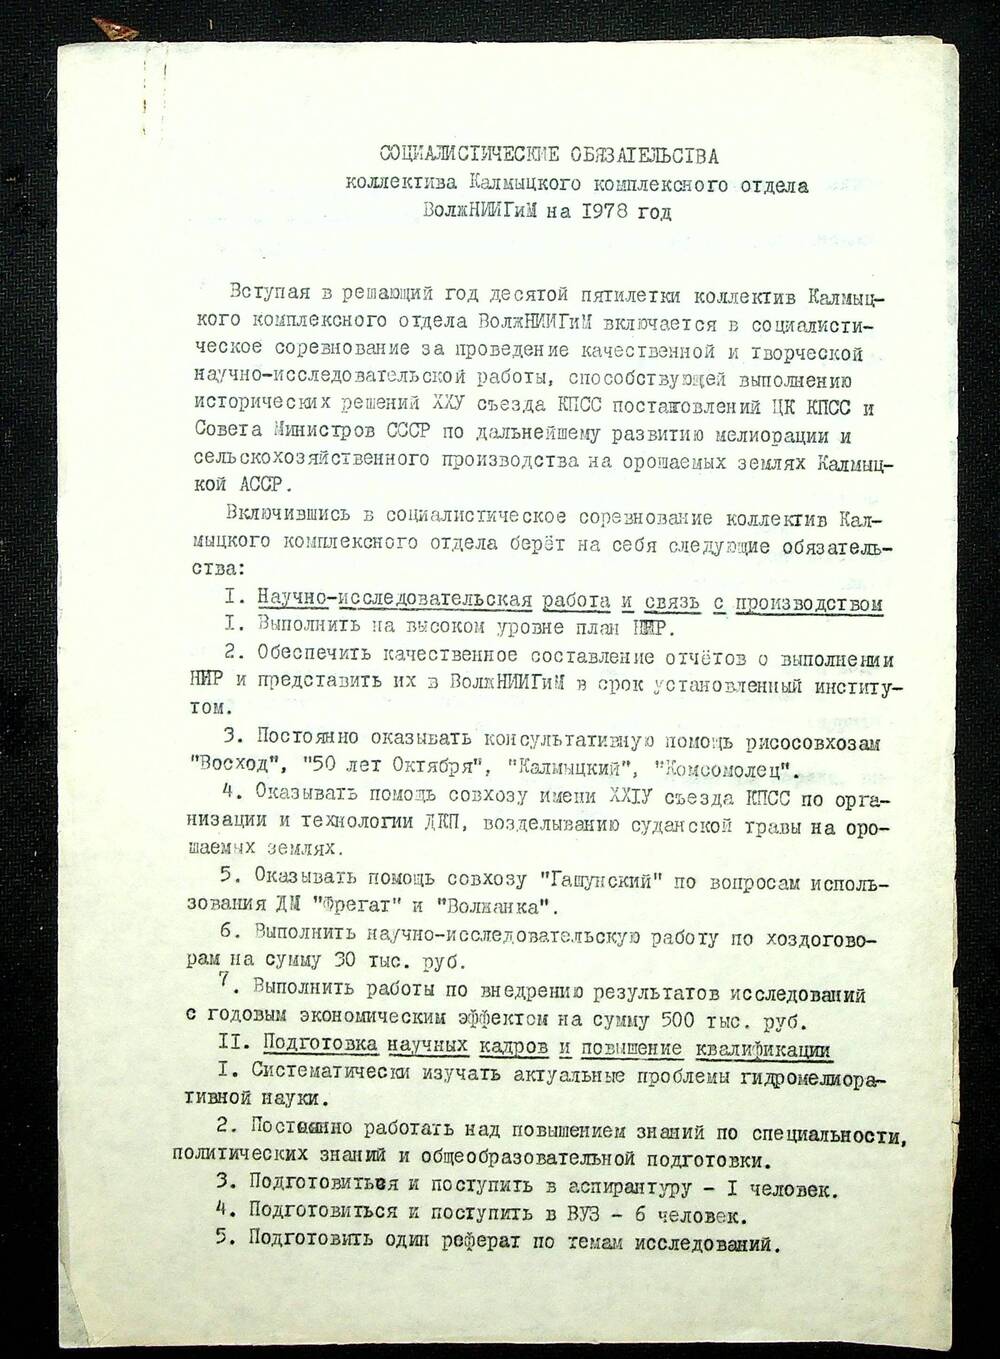 Социалистические обязательства коллектива Калмыцкого комплексного отдела ВолжскГМ на 1978 г.